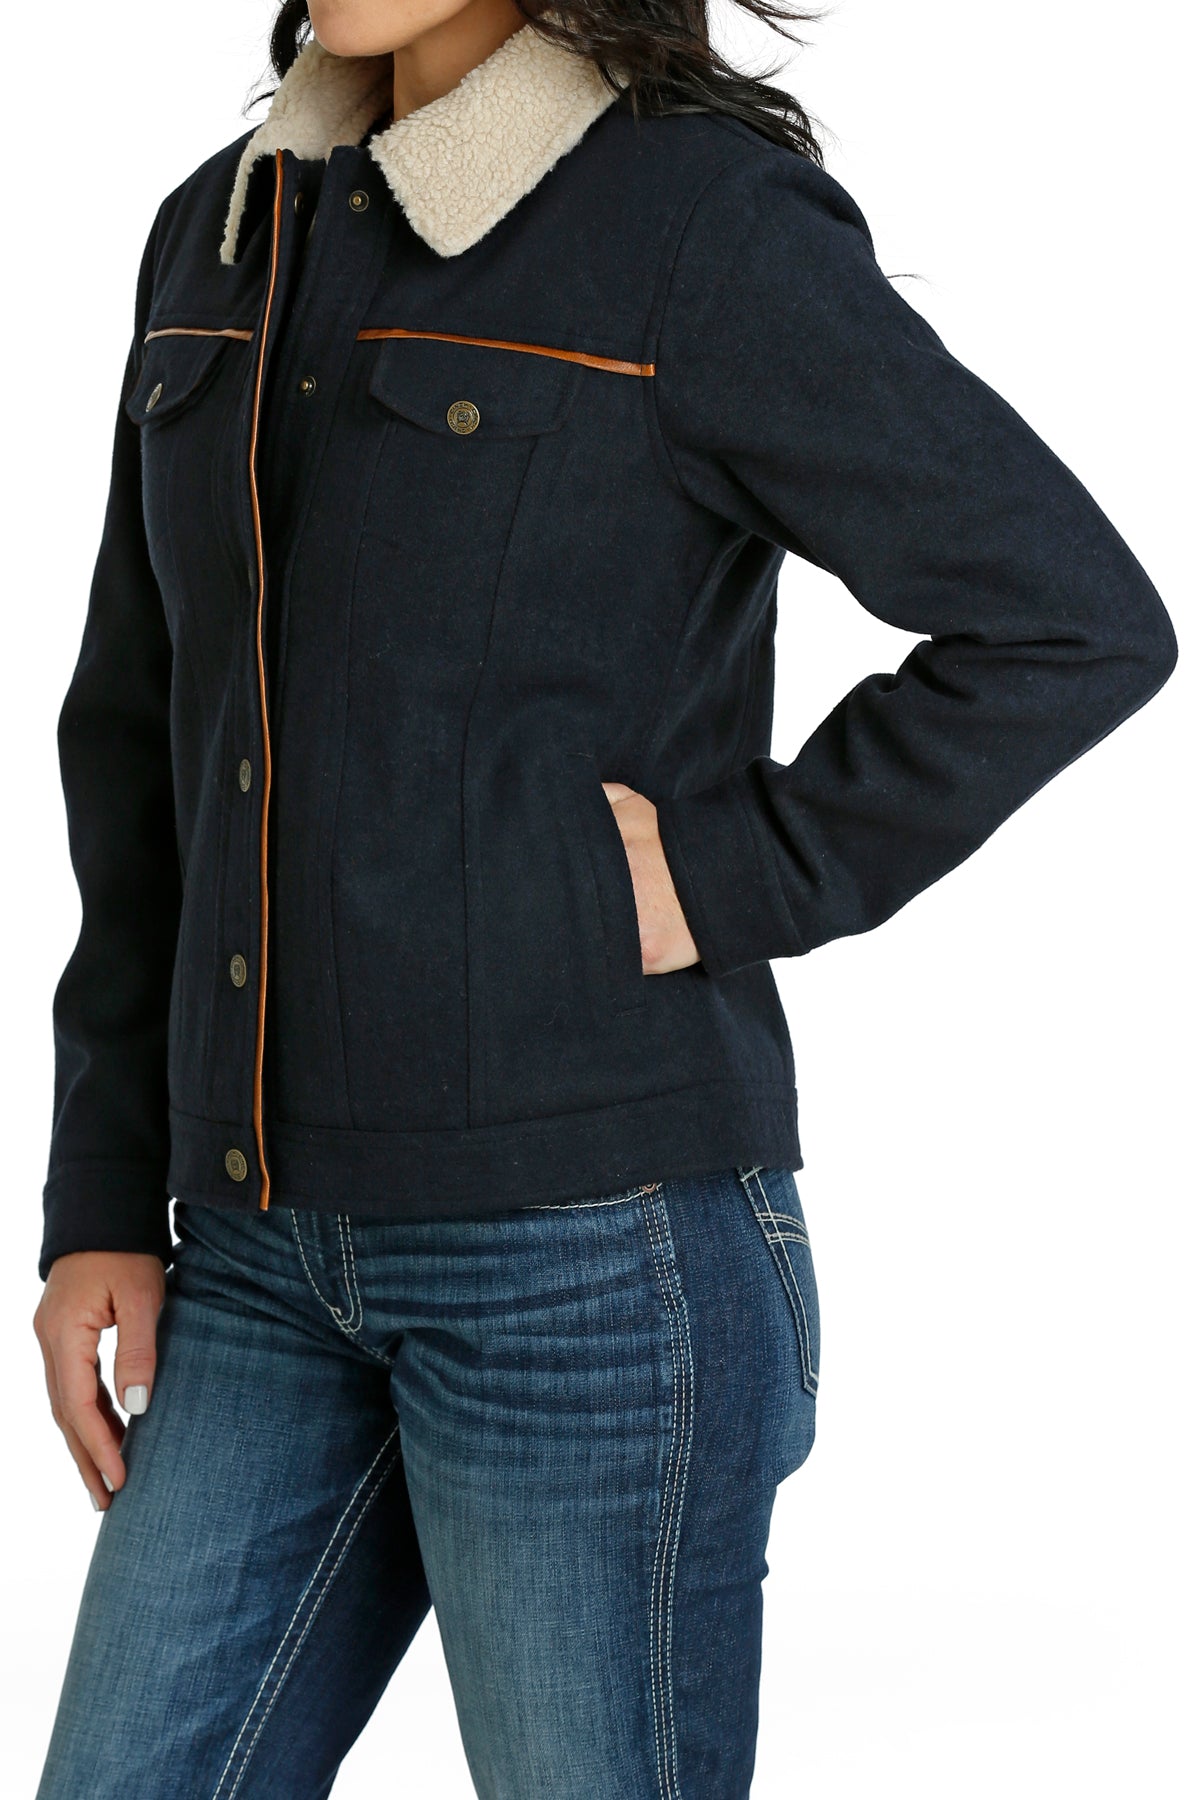 CINCH Women's Wooly Trucker Jacket